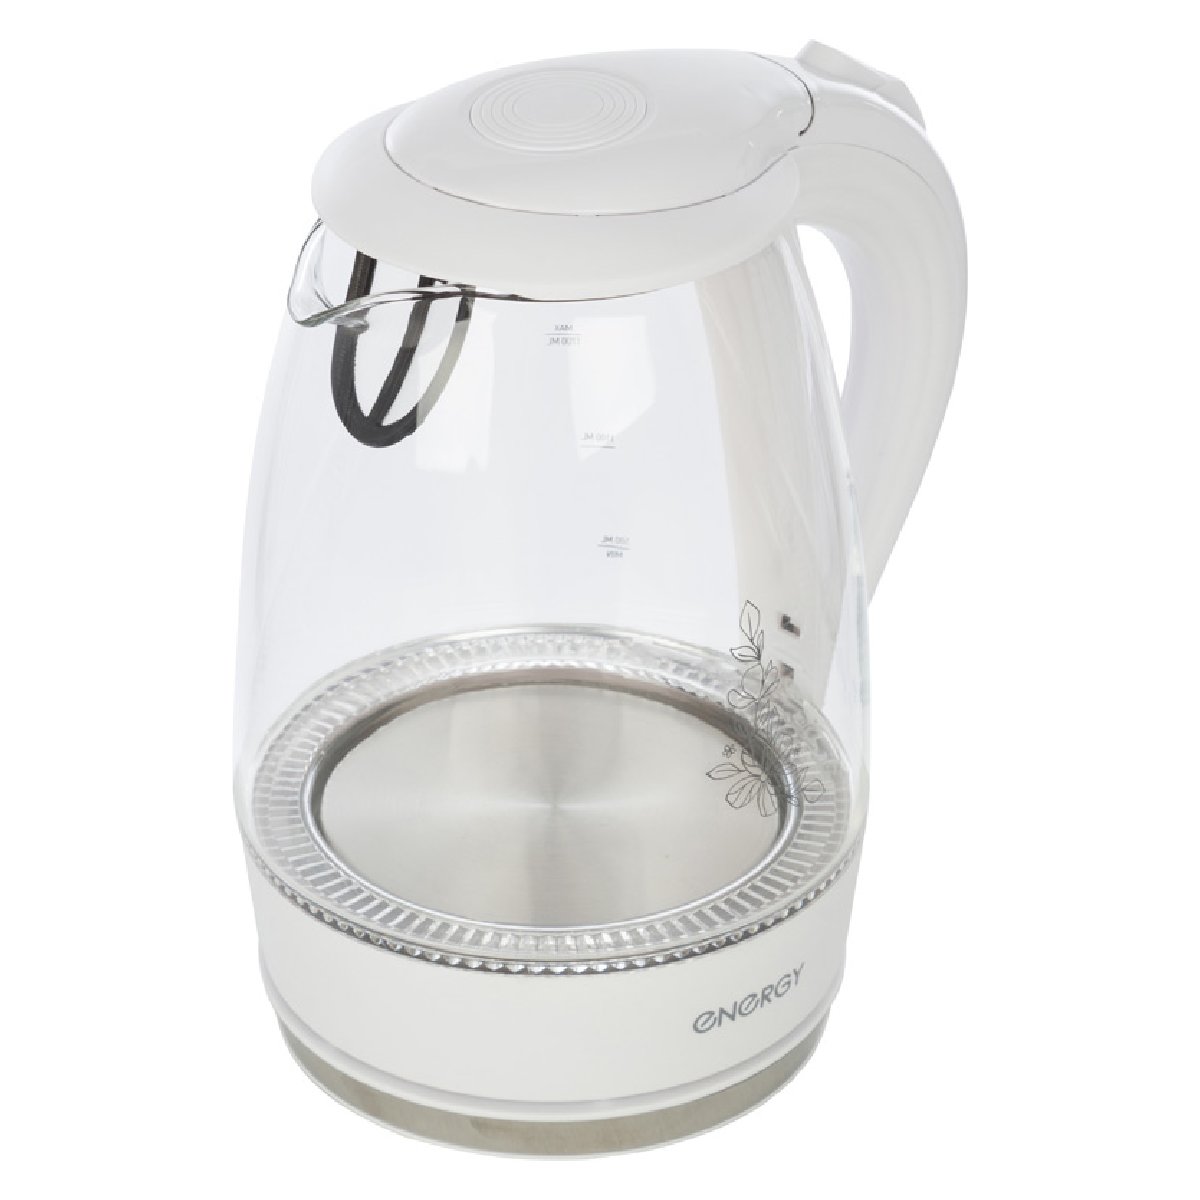 Energy E-262 чайник электрический дисковый, 1.7л, 1850-2200Вт, стеклянный, белый (164104)Купить